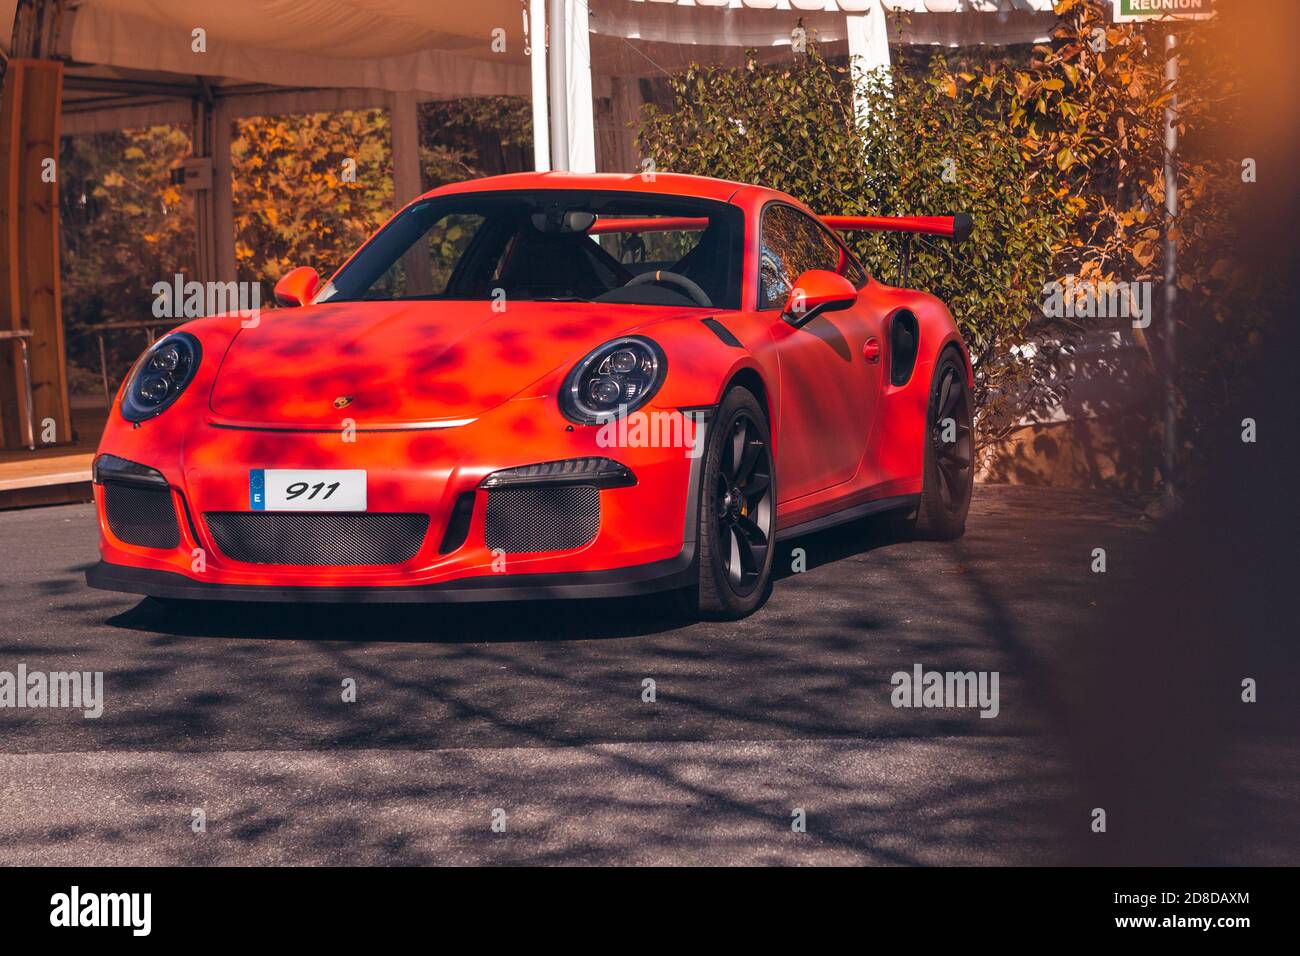 Vallines, Cantabrie, Espagne - 23 octobre 2020 : Orange Porsche 911 garée lors d'une exposition de véhicules super sportifs organisée en Cantabrie. Banque D'Images